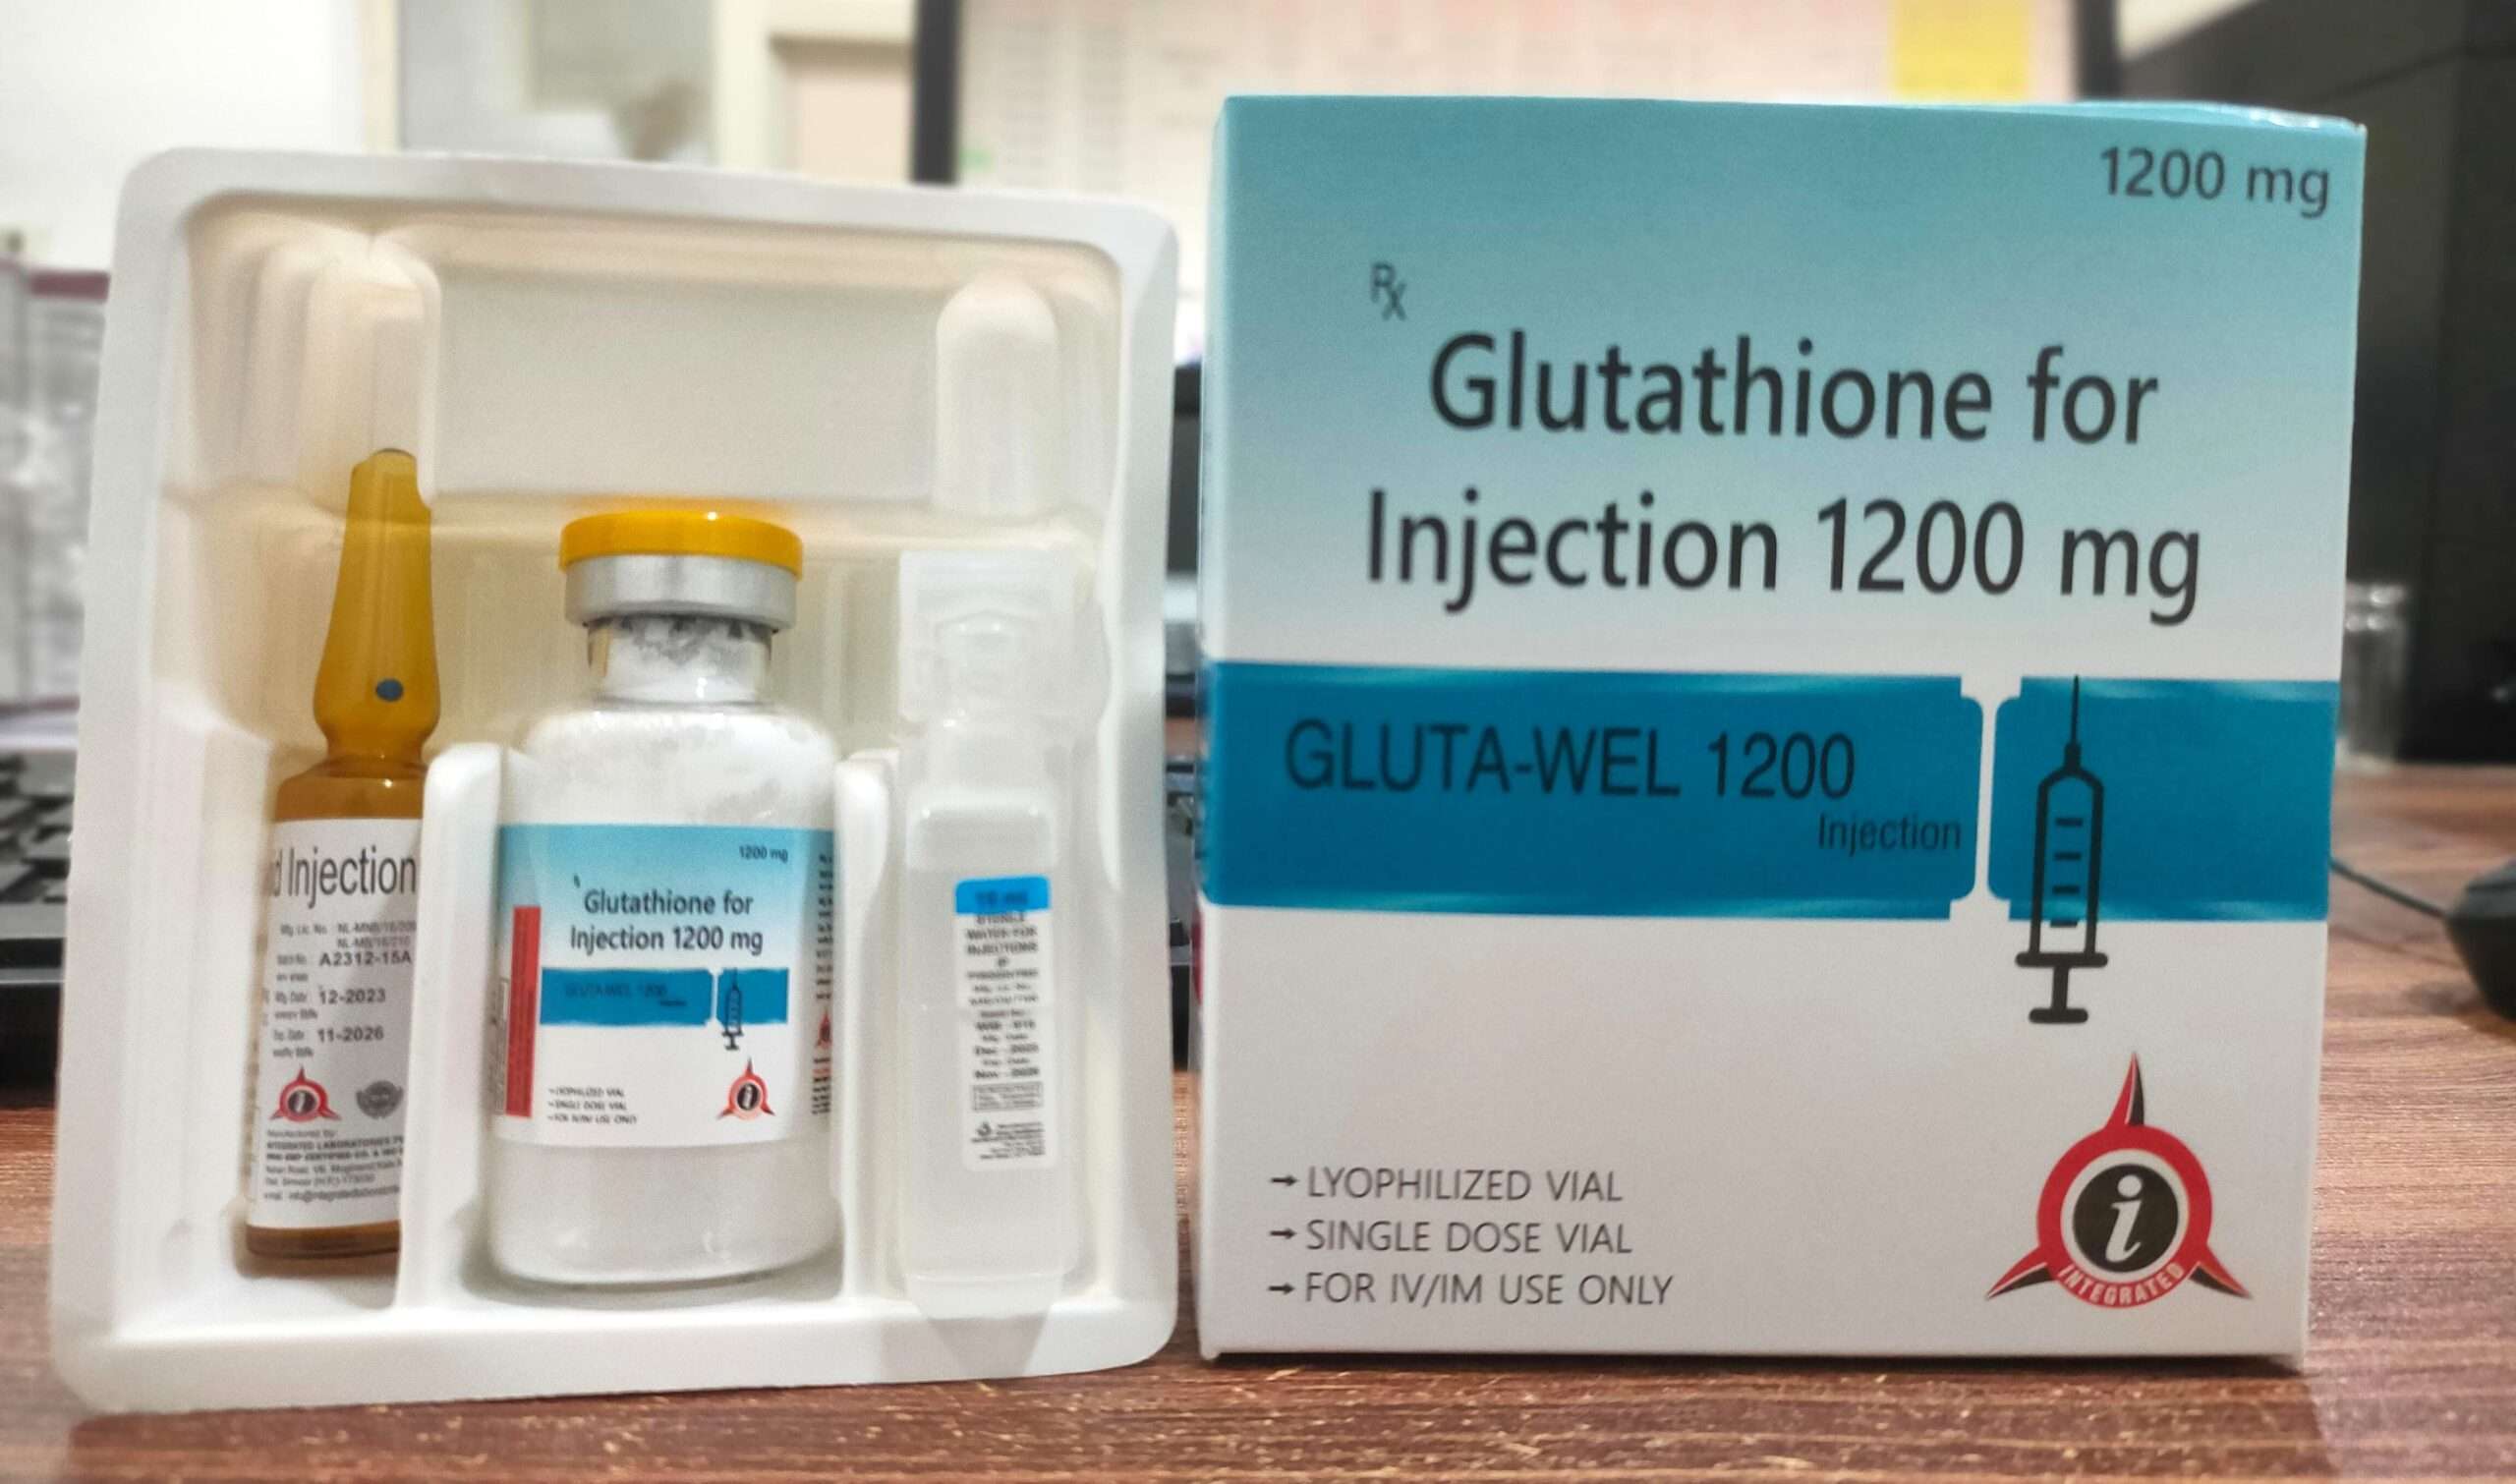 Glutathione injection 1200mg - GLUTA-WEL 1200